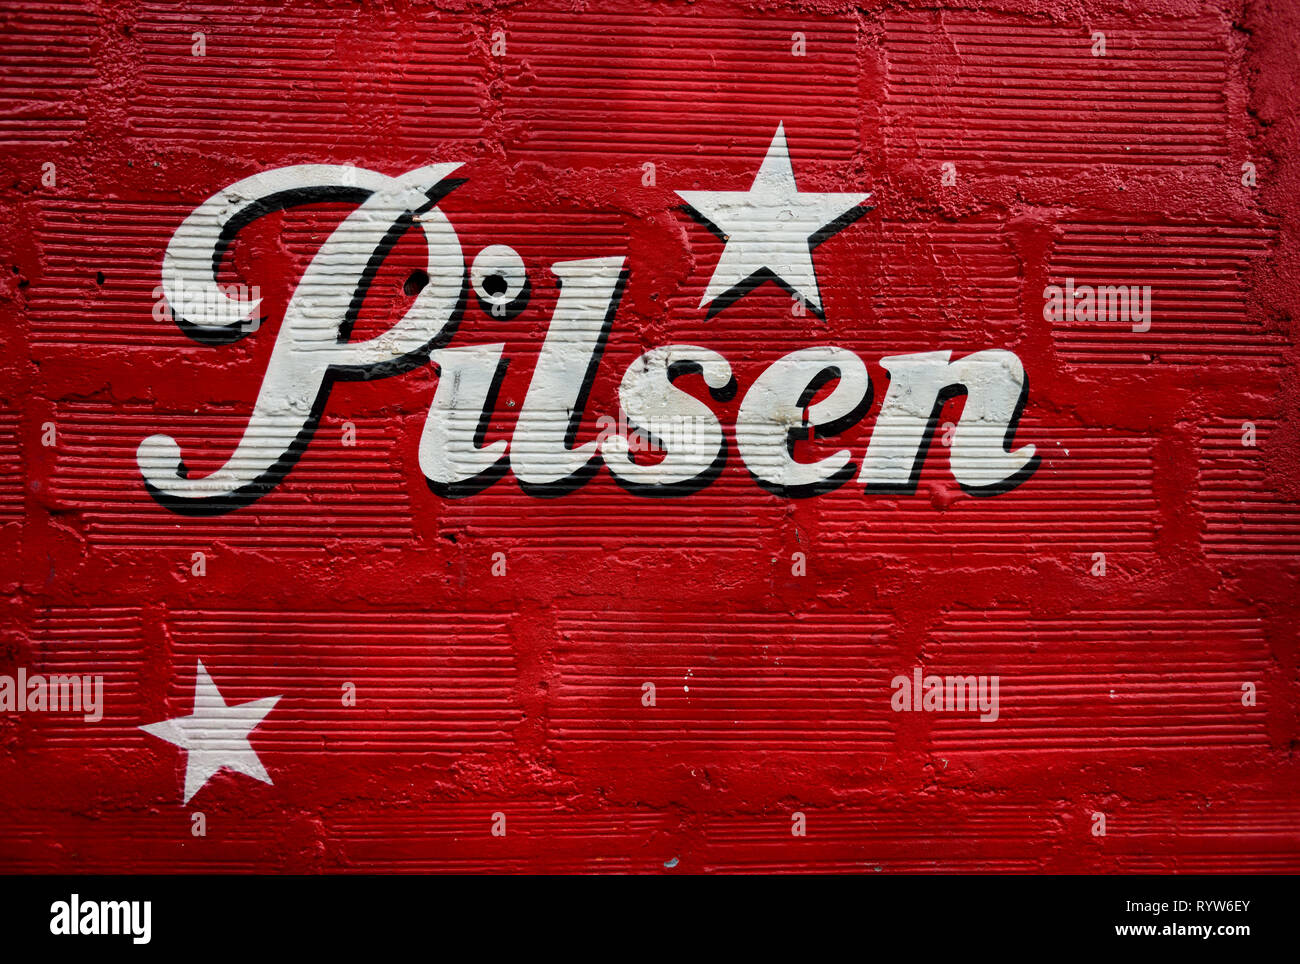 Rouge texturé mur peint avec le logo de la bière Pilsen,brassée depuis 1909, c'est la marque leader dans la région d'Antioquia en Colombie, en Amérique du Sud. Banque D'Images